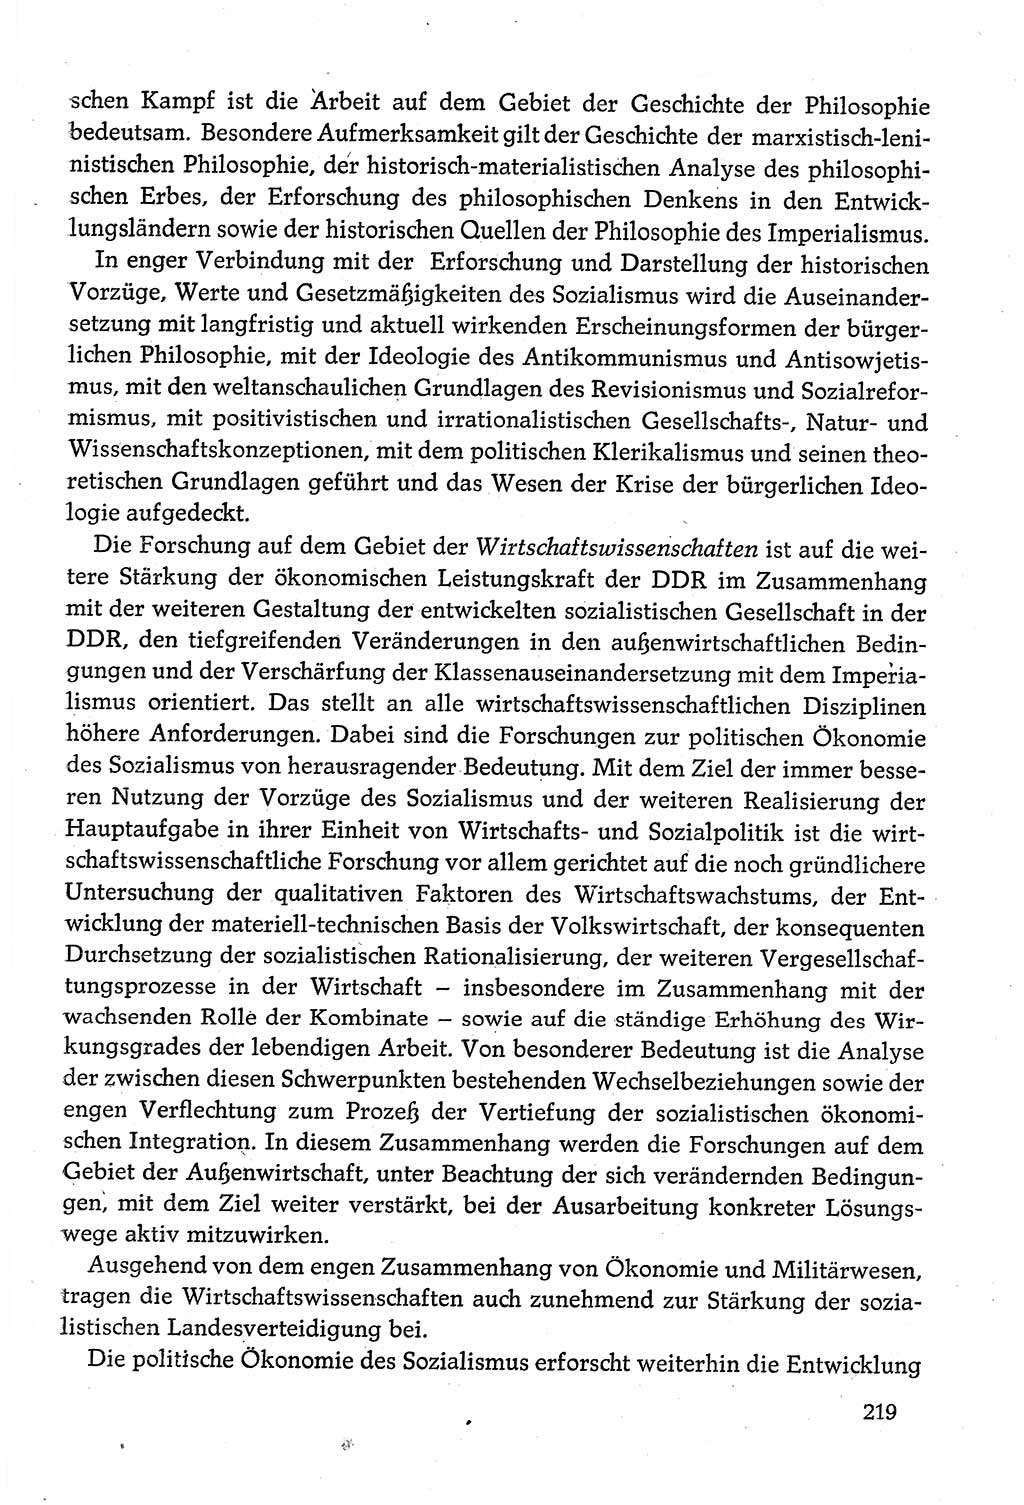 Dokumente der Sozialistischen Einheitspartei Deutschlands (SED) [Deutsche Demokratische Republik (DDR)] 1980-1981, Seite 219 (Dok. SED DDR 1980-1981, S. 219)